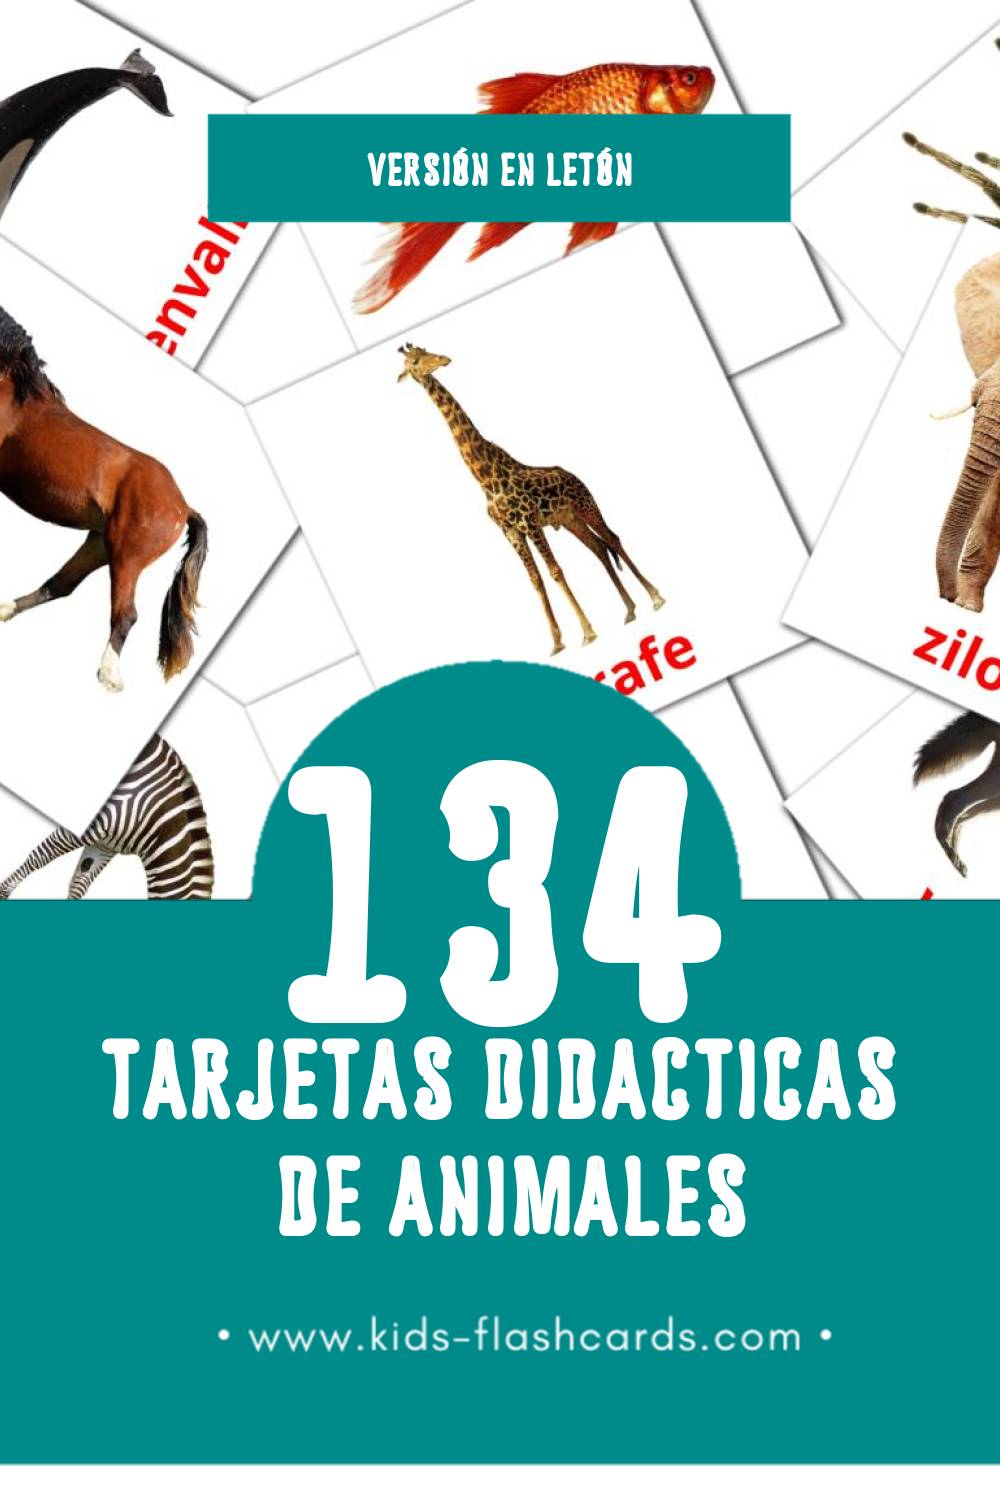 Tarjetas visuales de dzīvnieki para niños pequeños (134 tarjetas en Letón)